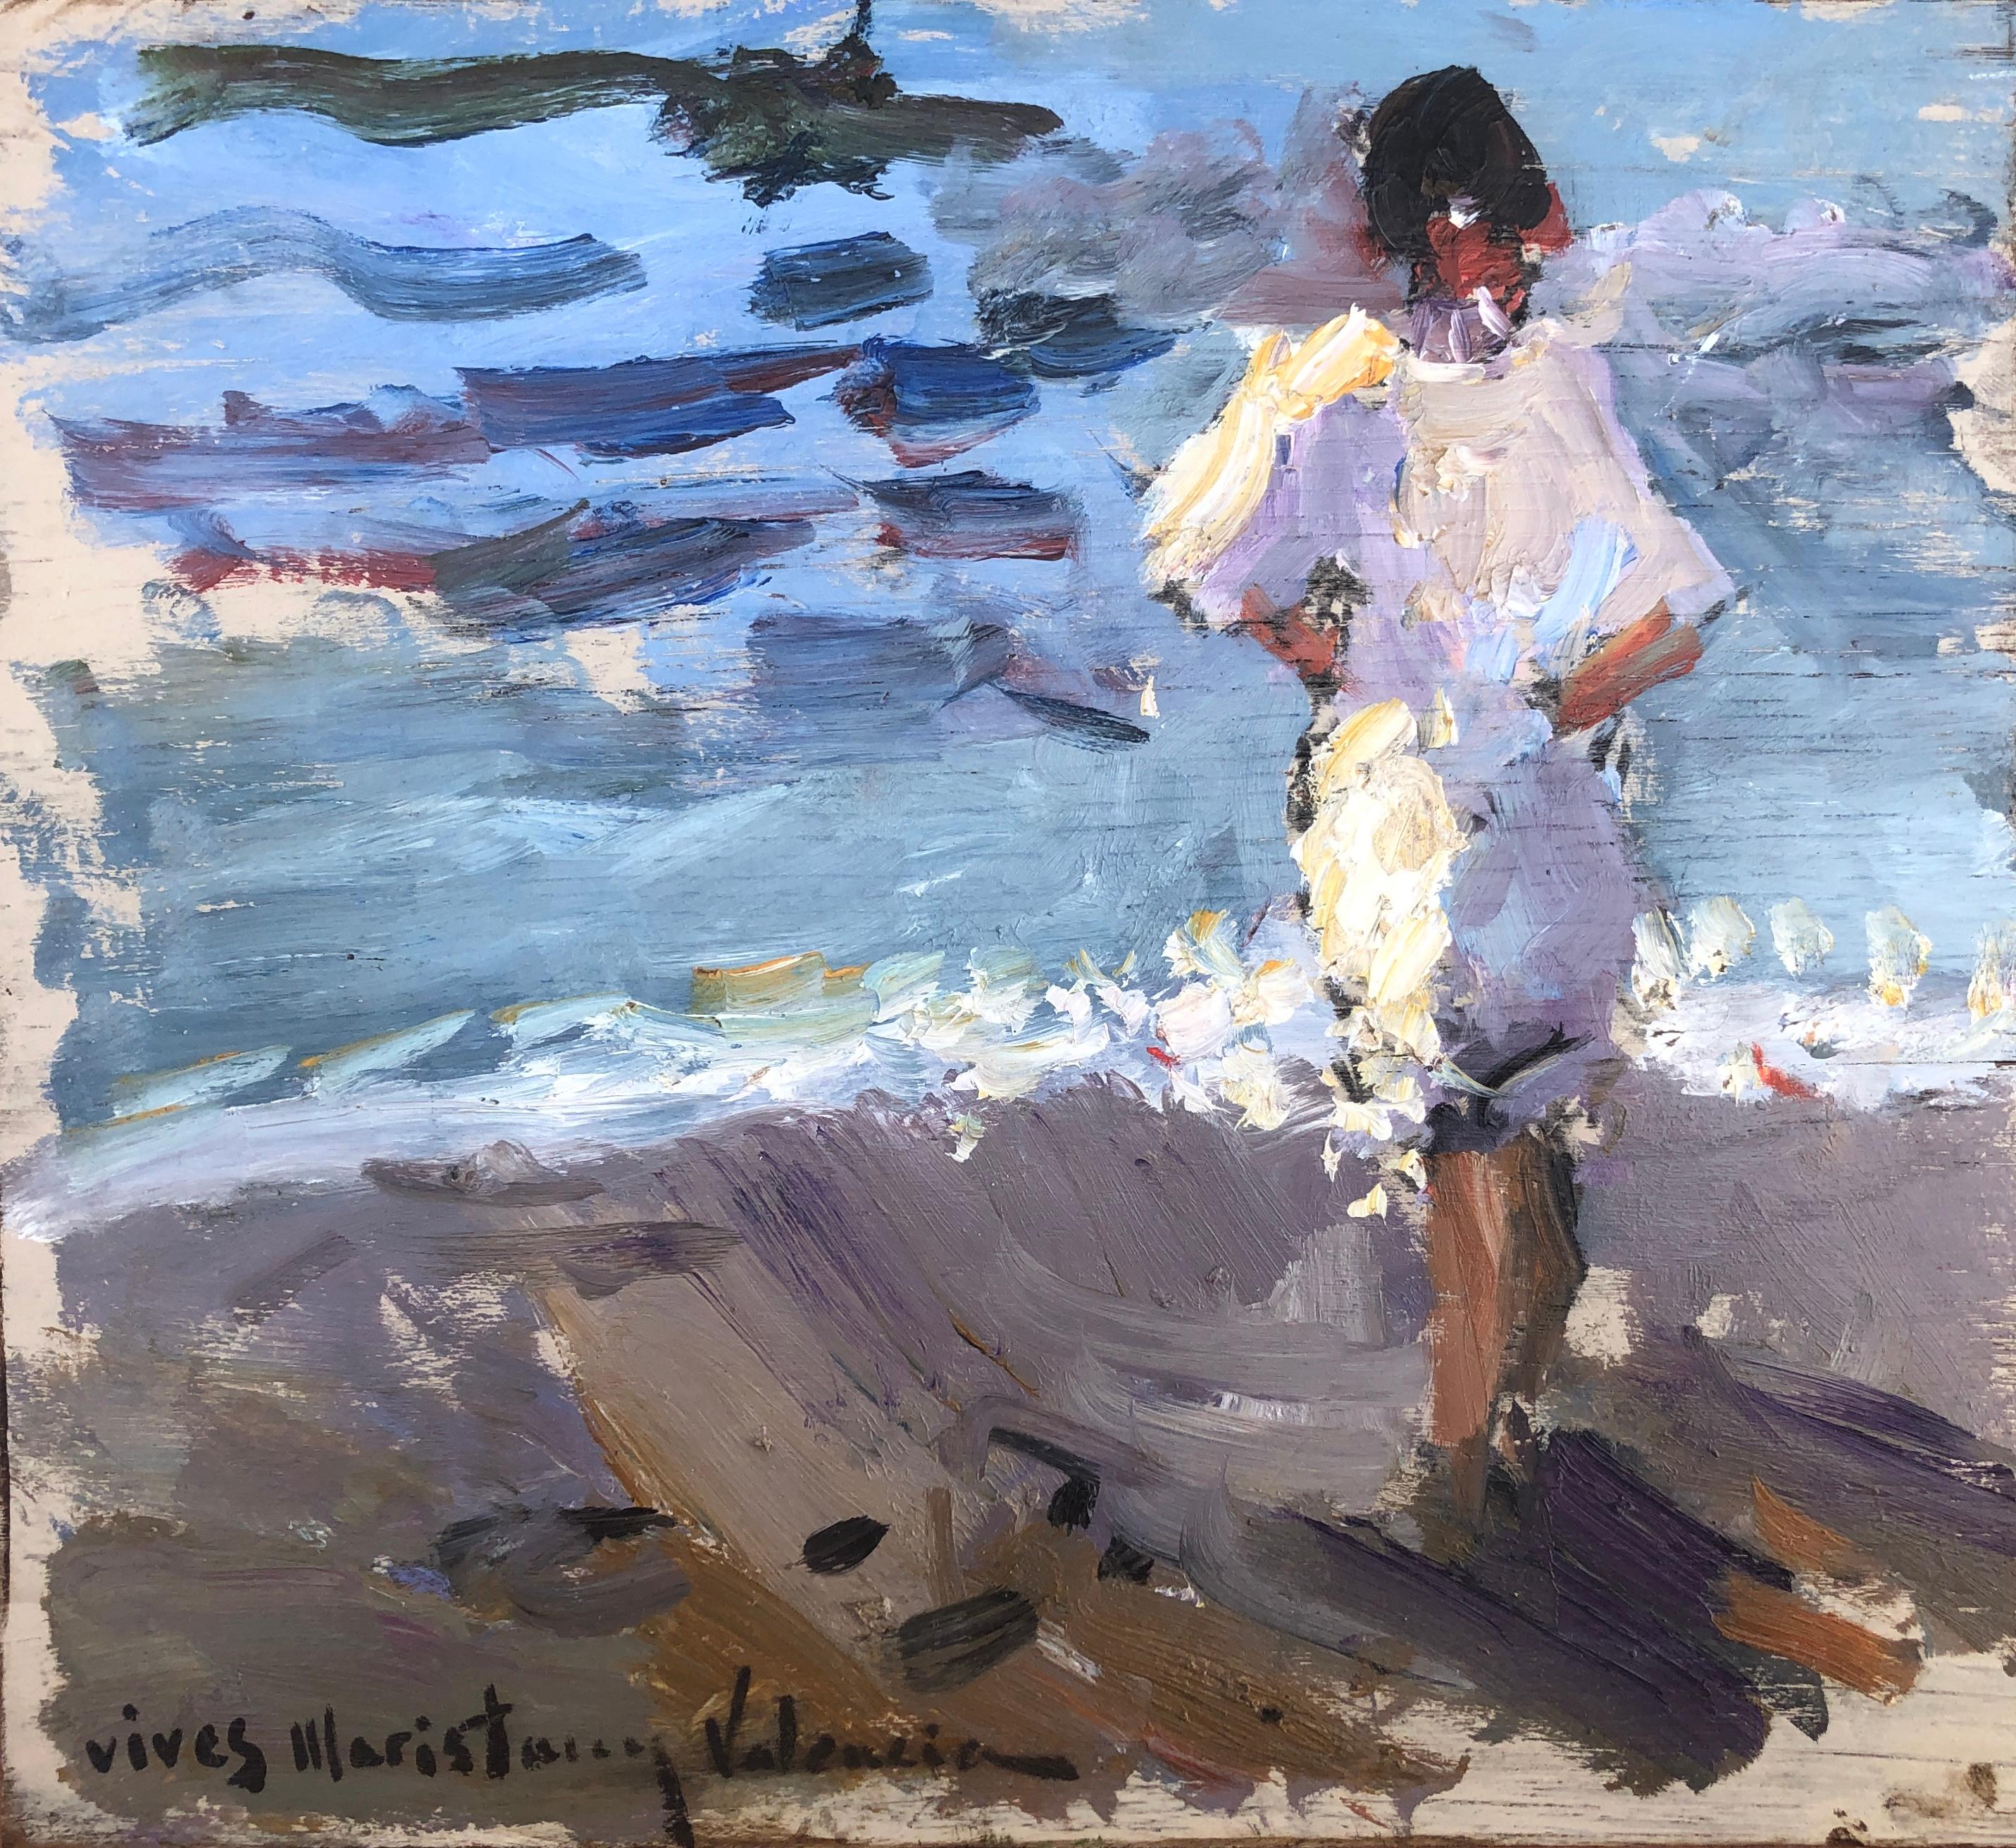 Frau am Strand von Valencia, Spanien, Öl auf Karton, Gemälde, impressionistisch